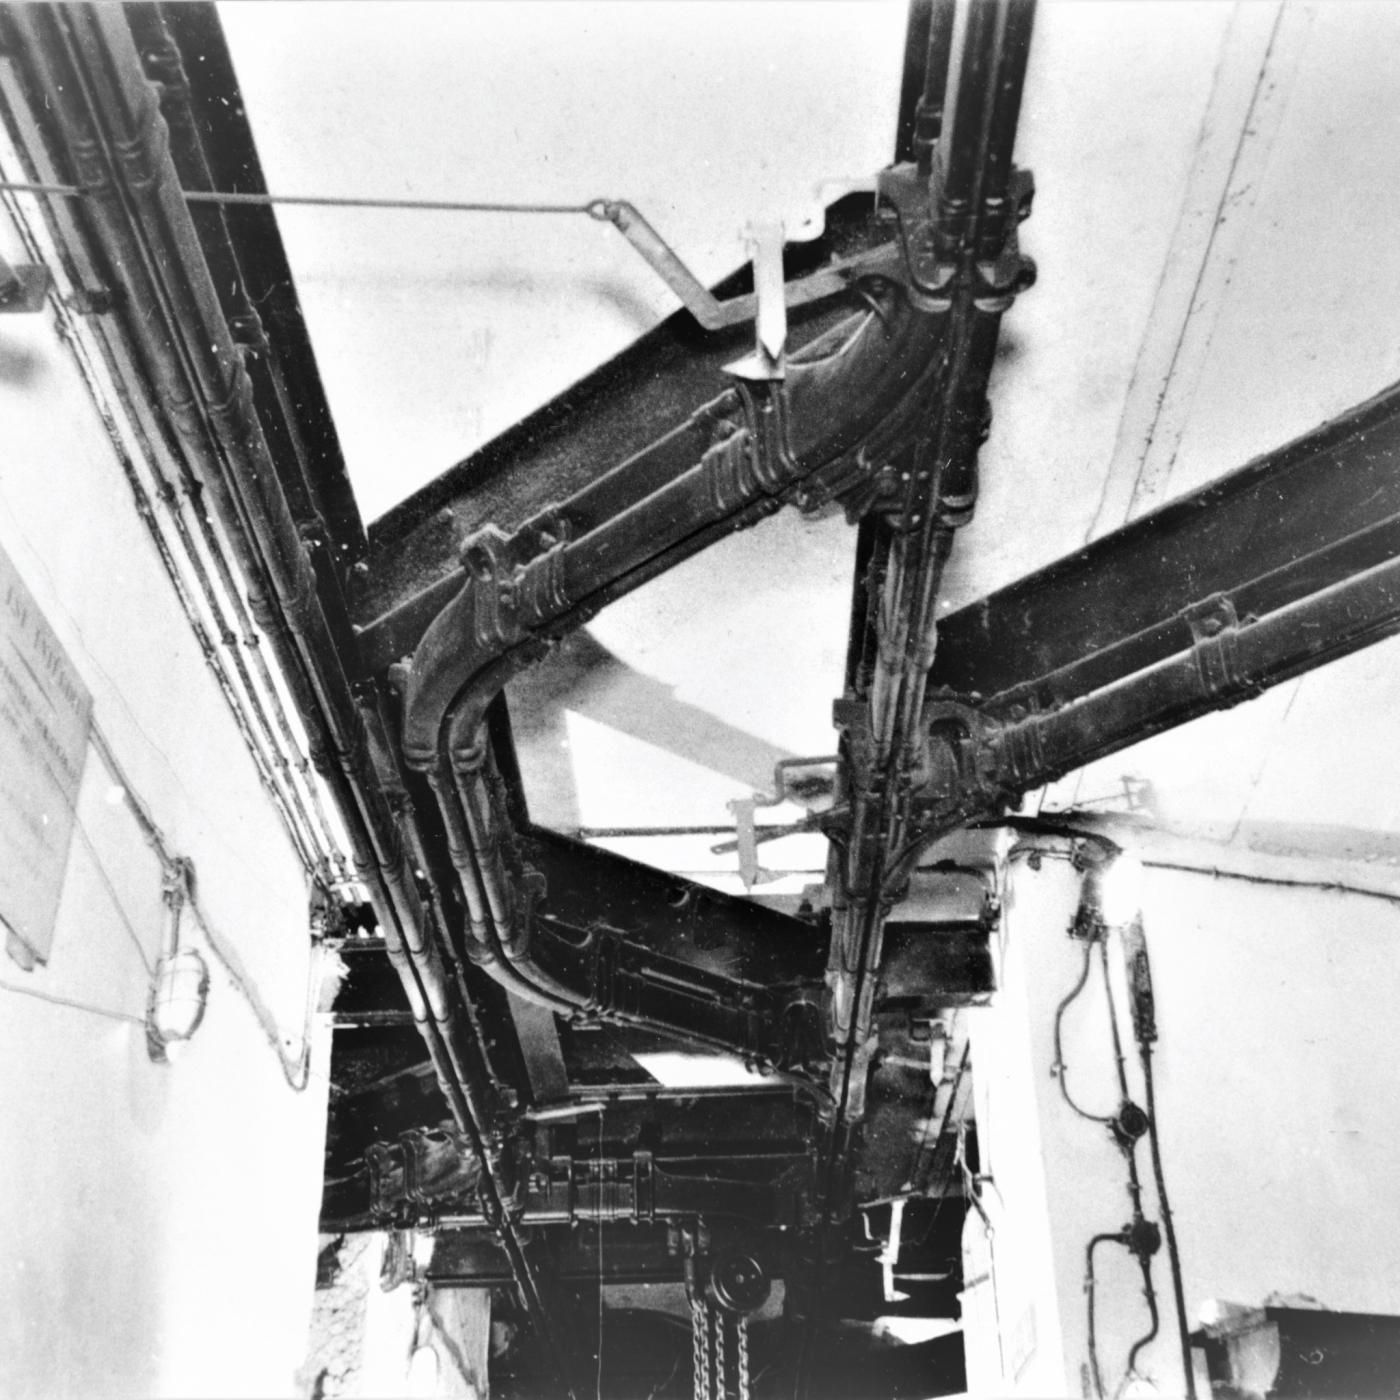 Ligne Maginot - FERMONT - A2 - (Ouvrage d'artillerie) - Bloc 4
Le monorail aérien Tourtelier pour le transport des munitions
Système d'aiguillage